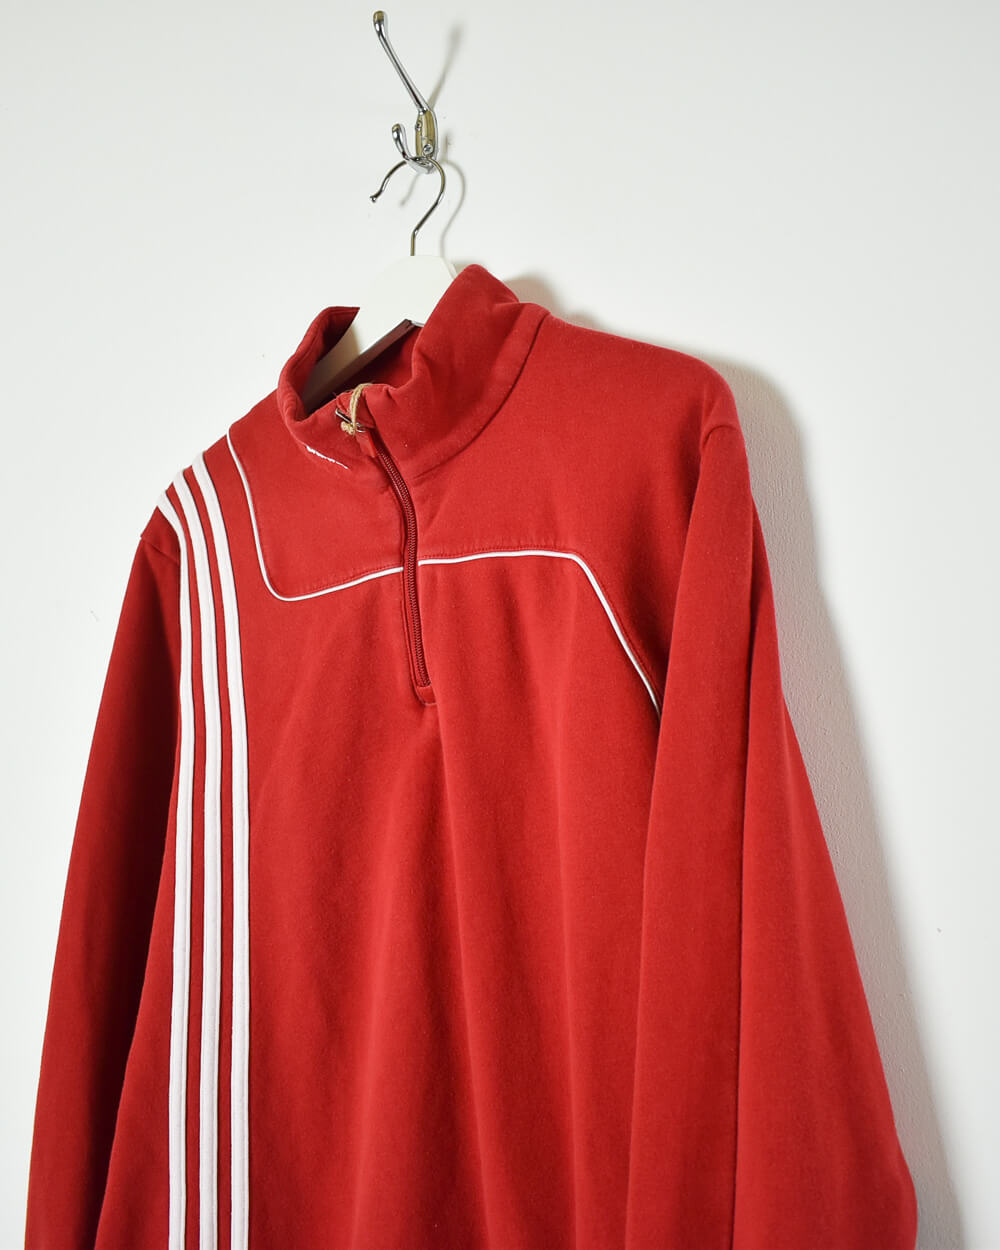 Red Adidas 1/4 Zip Sweatshirt - Large